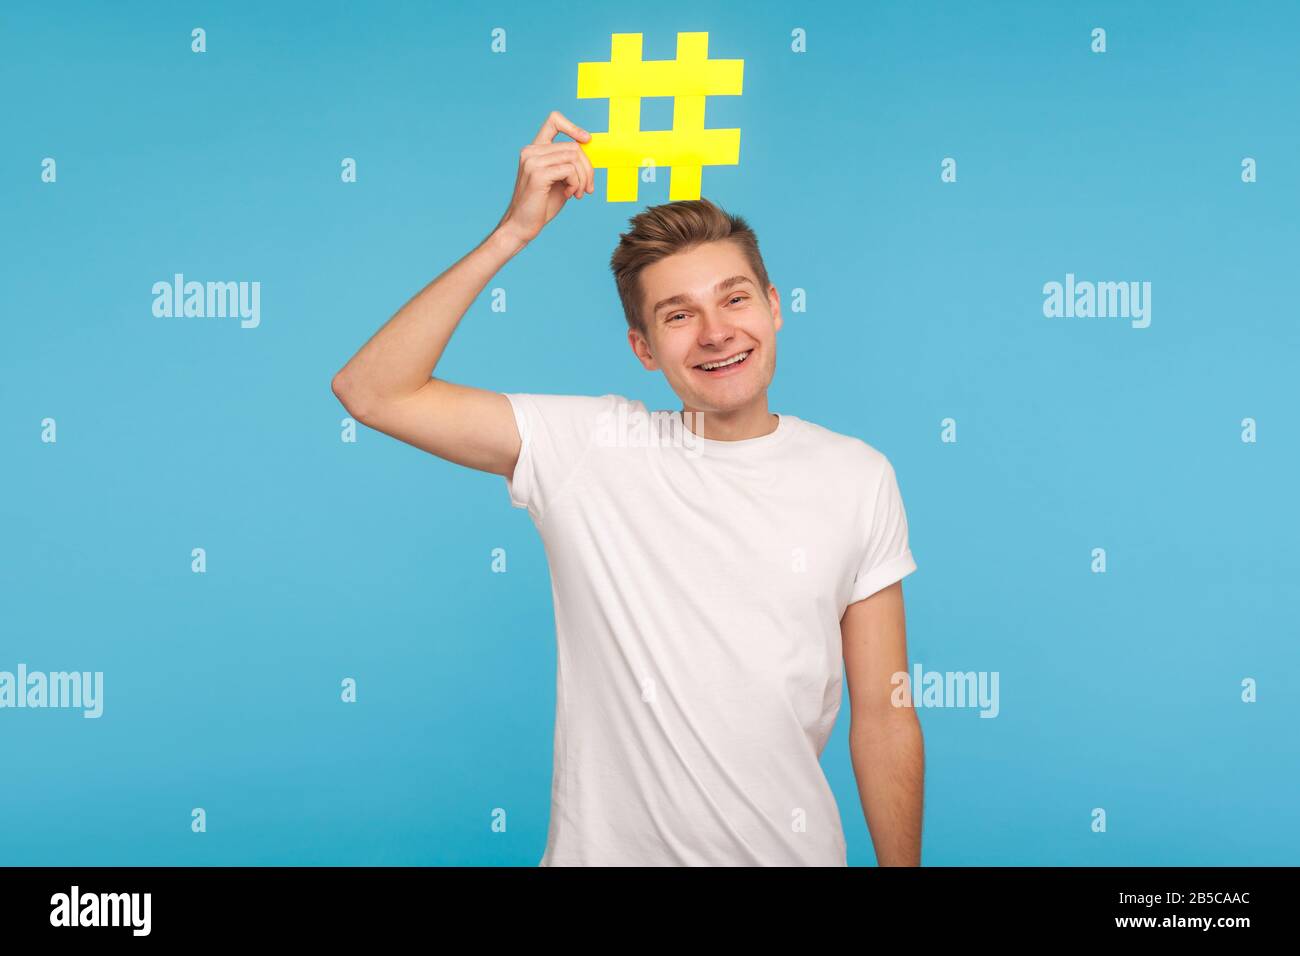 Popularité des médias. Homme drôle et insouciant dans un t-shirt tenant un grand symbole hashtag jaune sur sa tête et souriant, signe de hachage des tendances d'Internet, social viral Banque D'Images